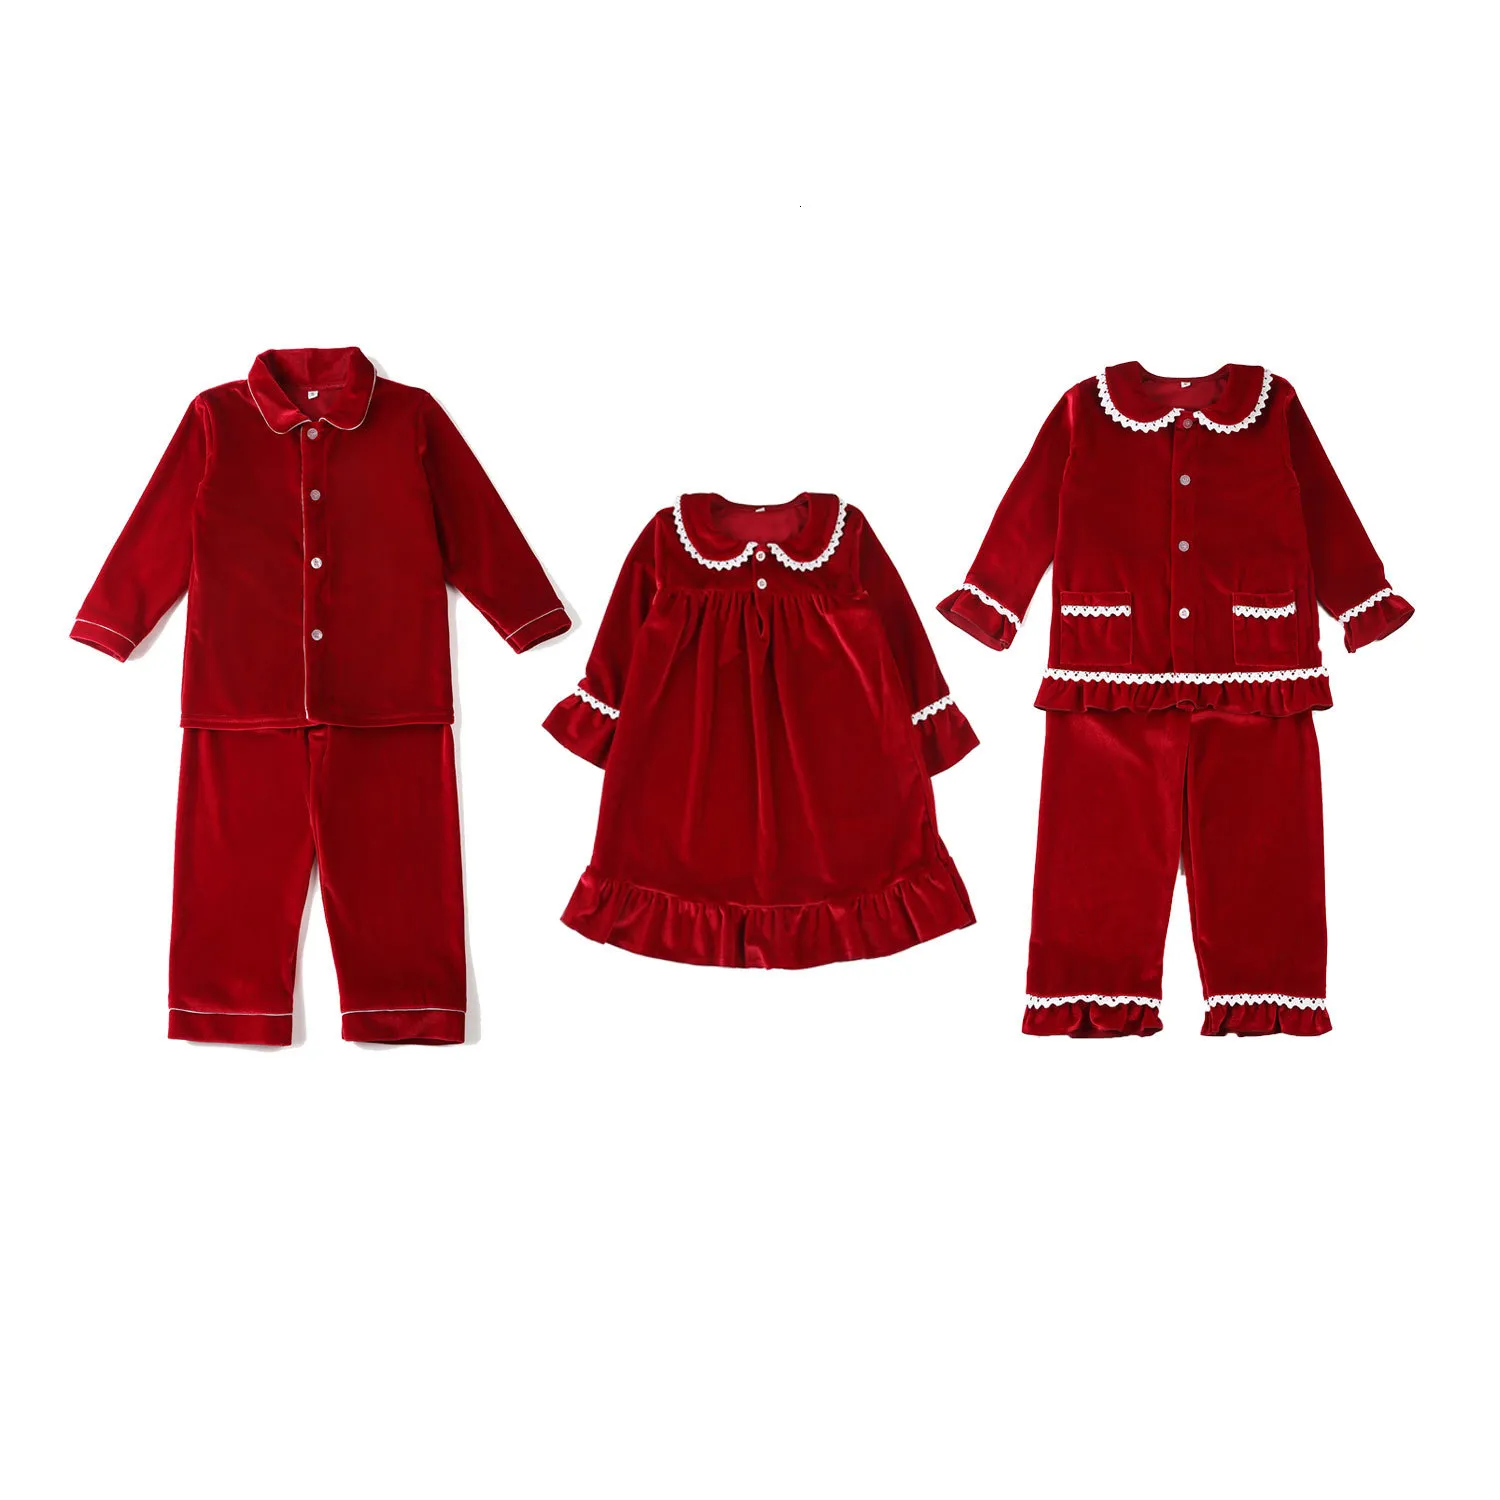 パジャマ卸売ベビー幼児の子供たちの男の子と女の子の家族マッチするクリスマスパジャマの服セットベルベット子供221125